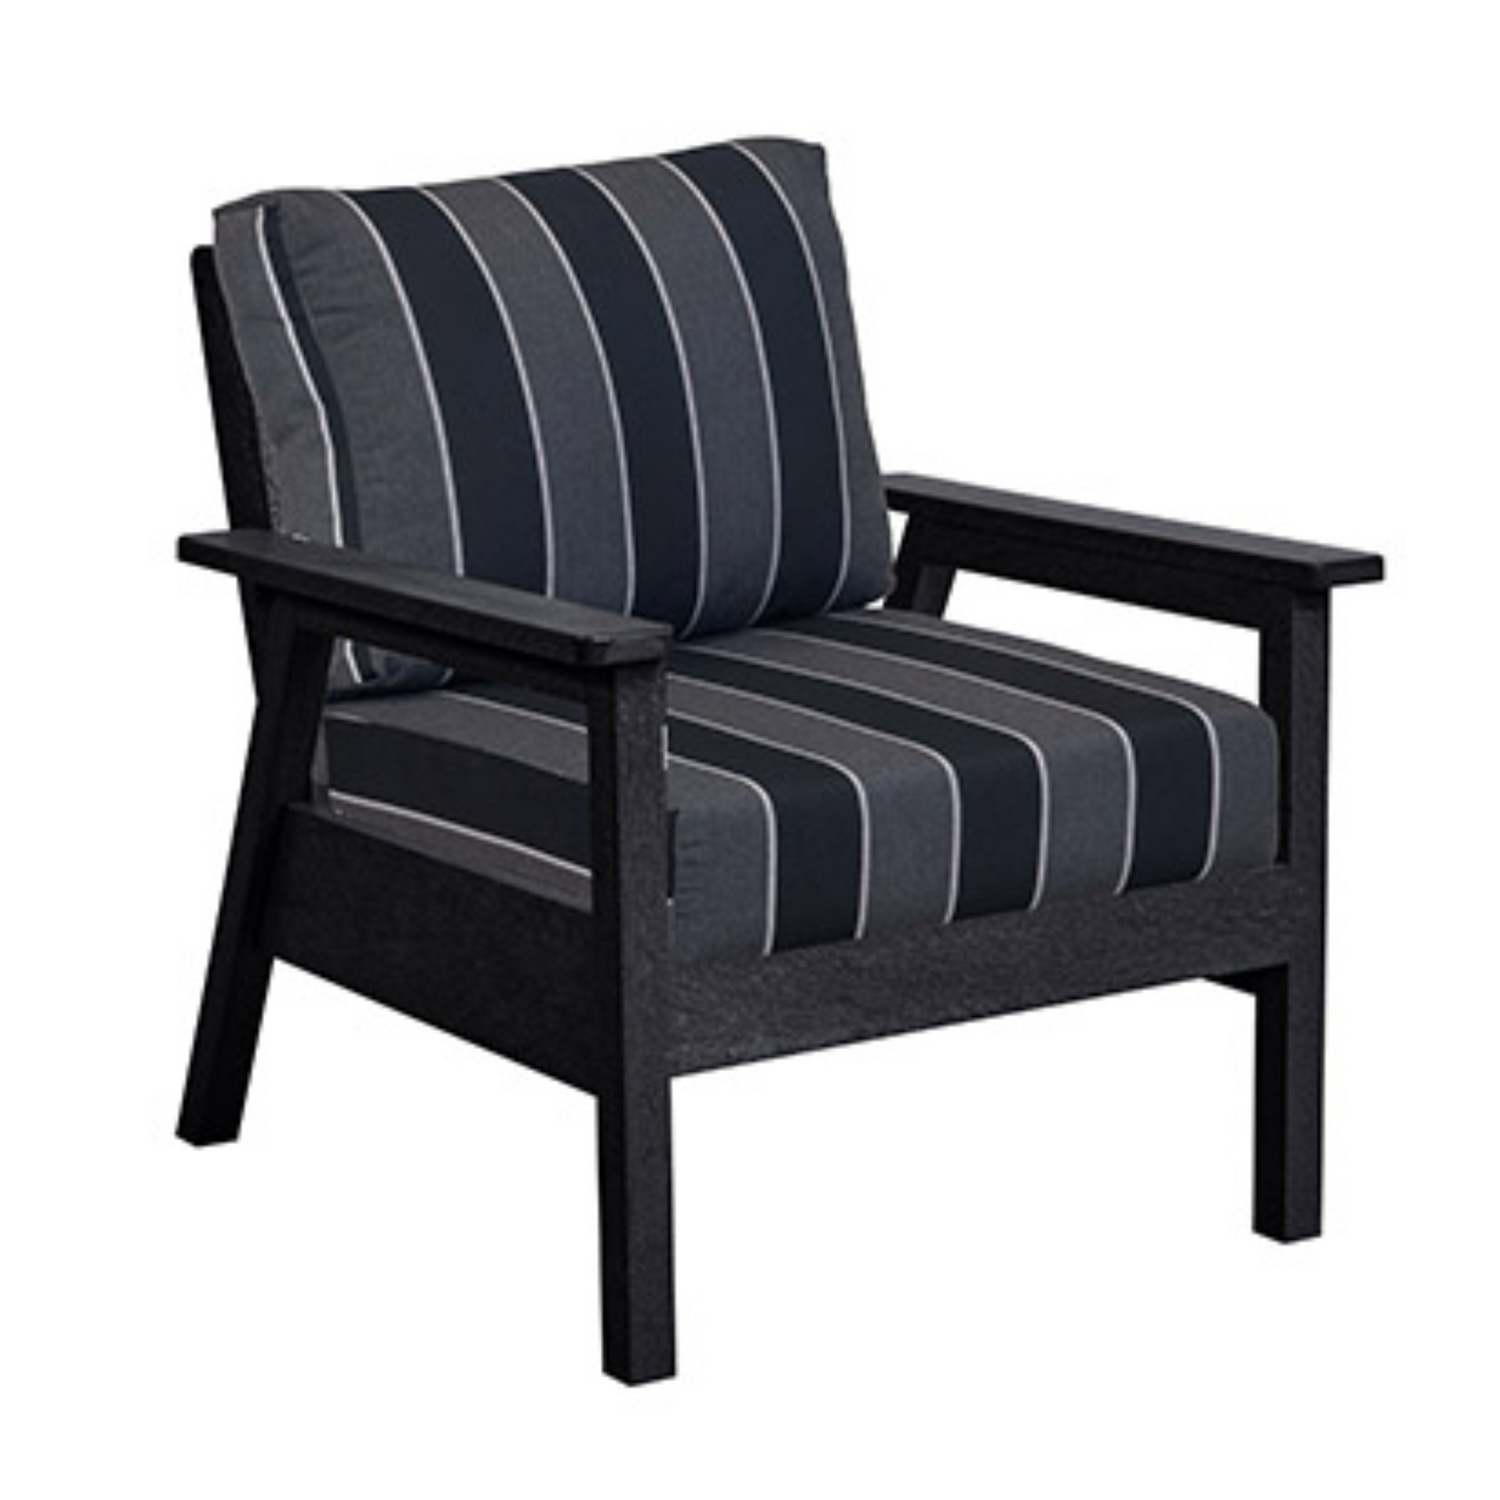 C.R.P. Club Chair in frame colour black and cushion colour peyton granite